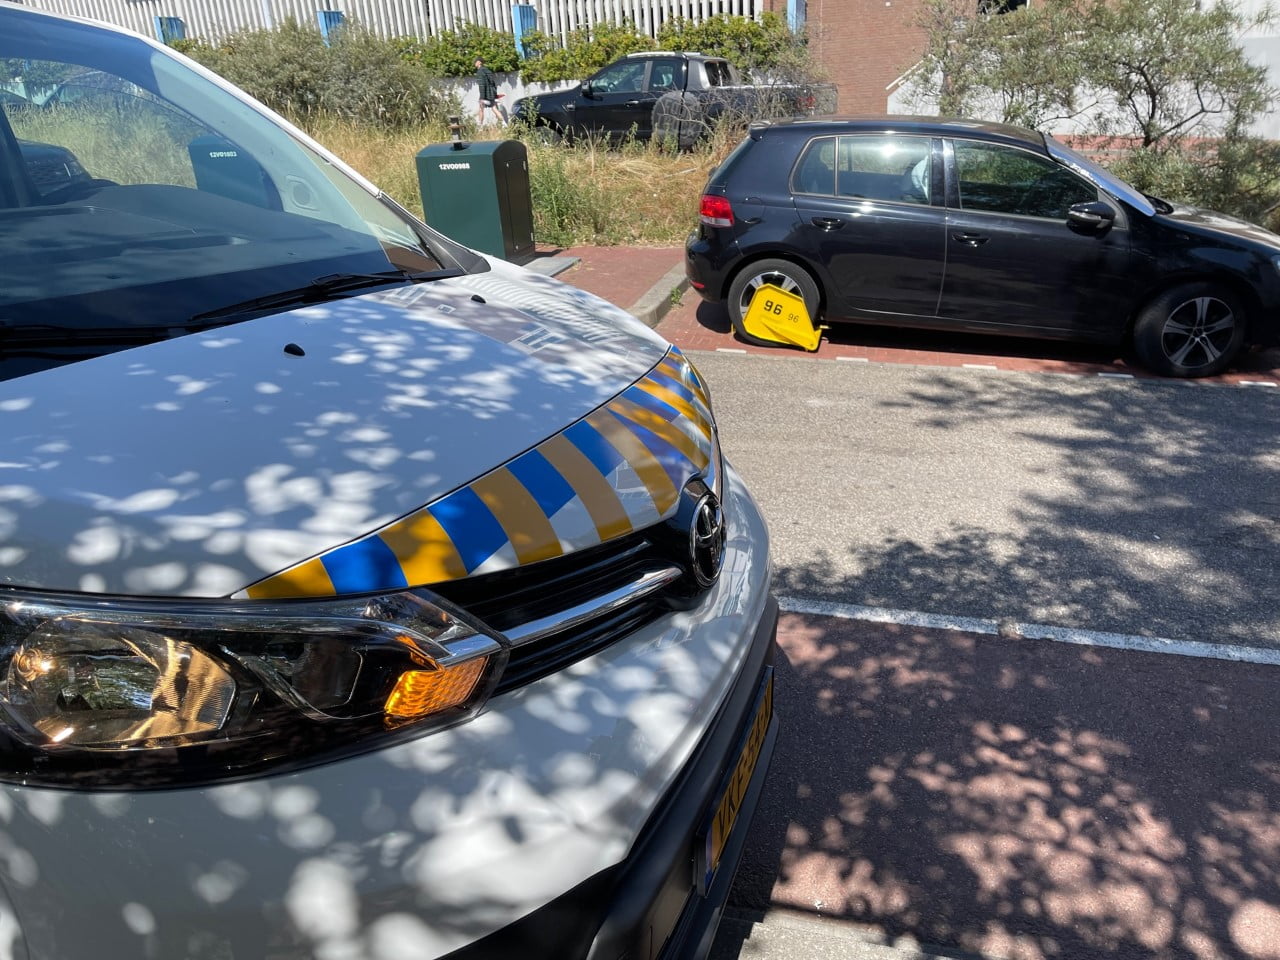 Rekordanstieg der Kurtaxe und Parkgebühren in niederländischen Städten